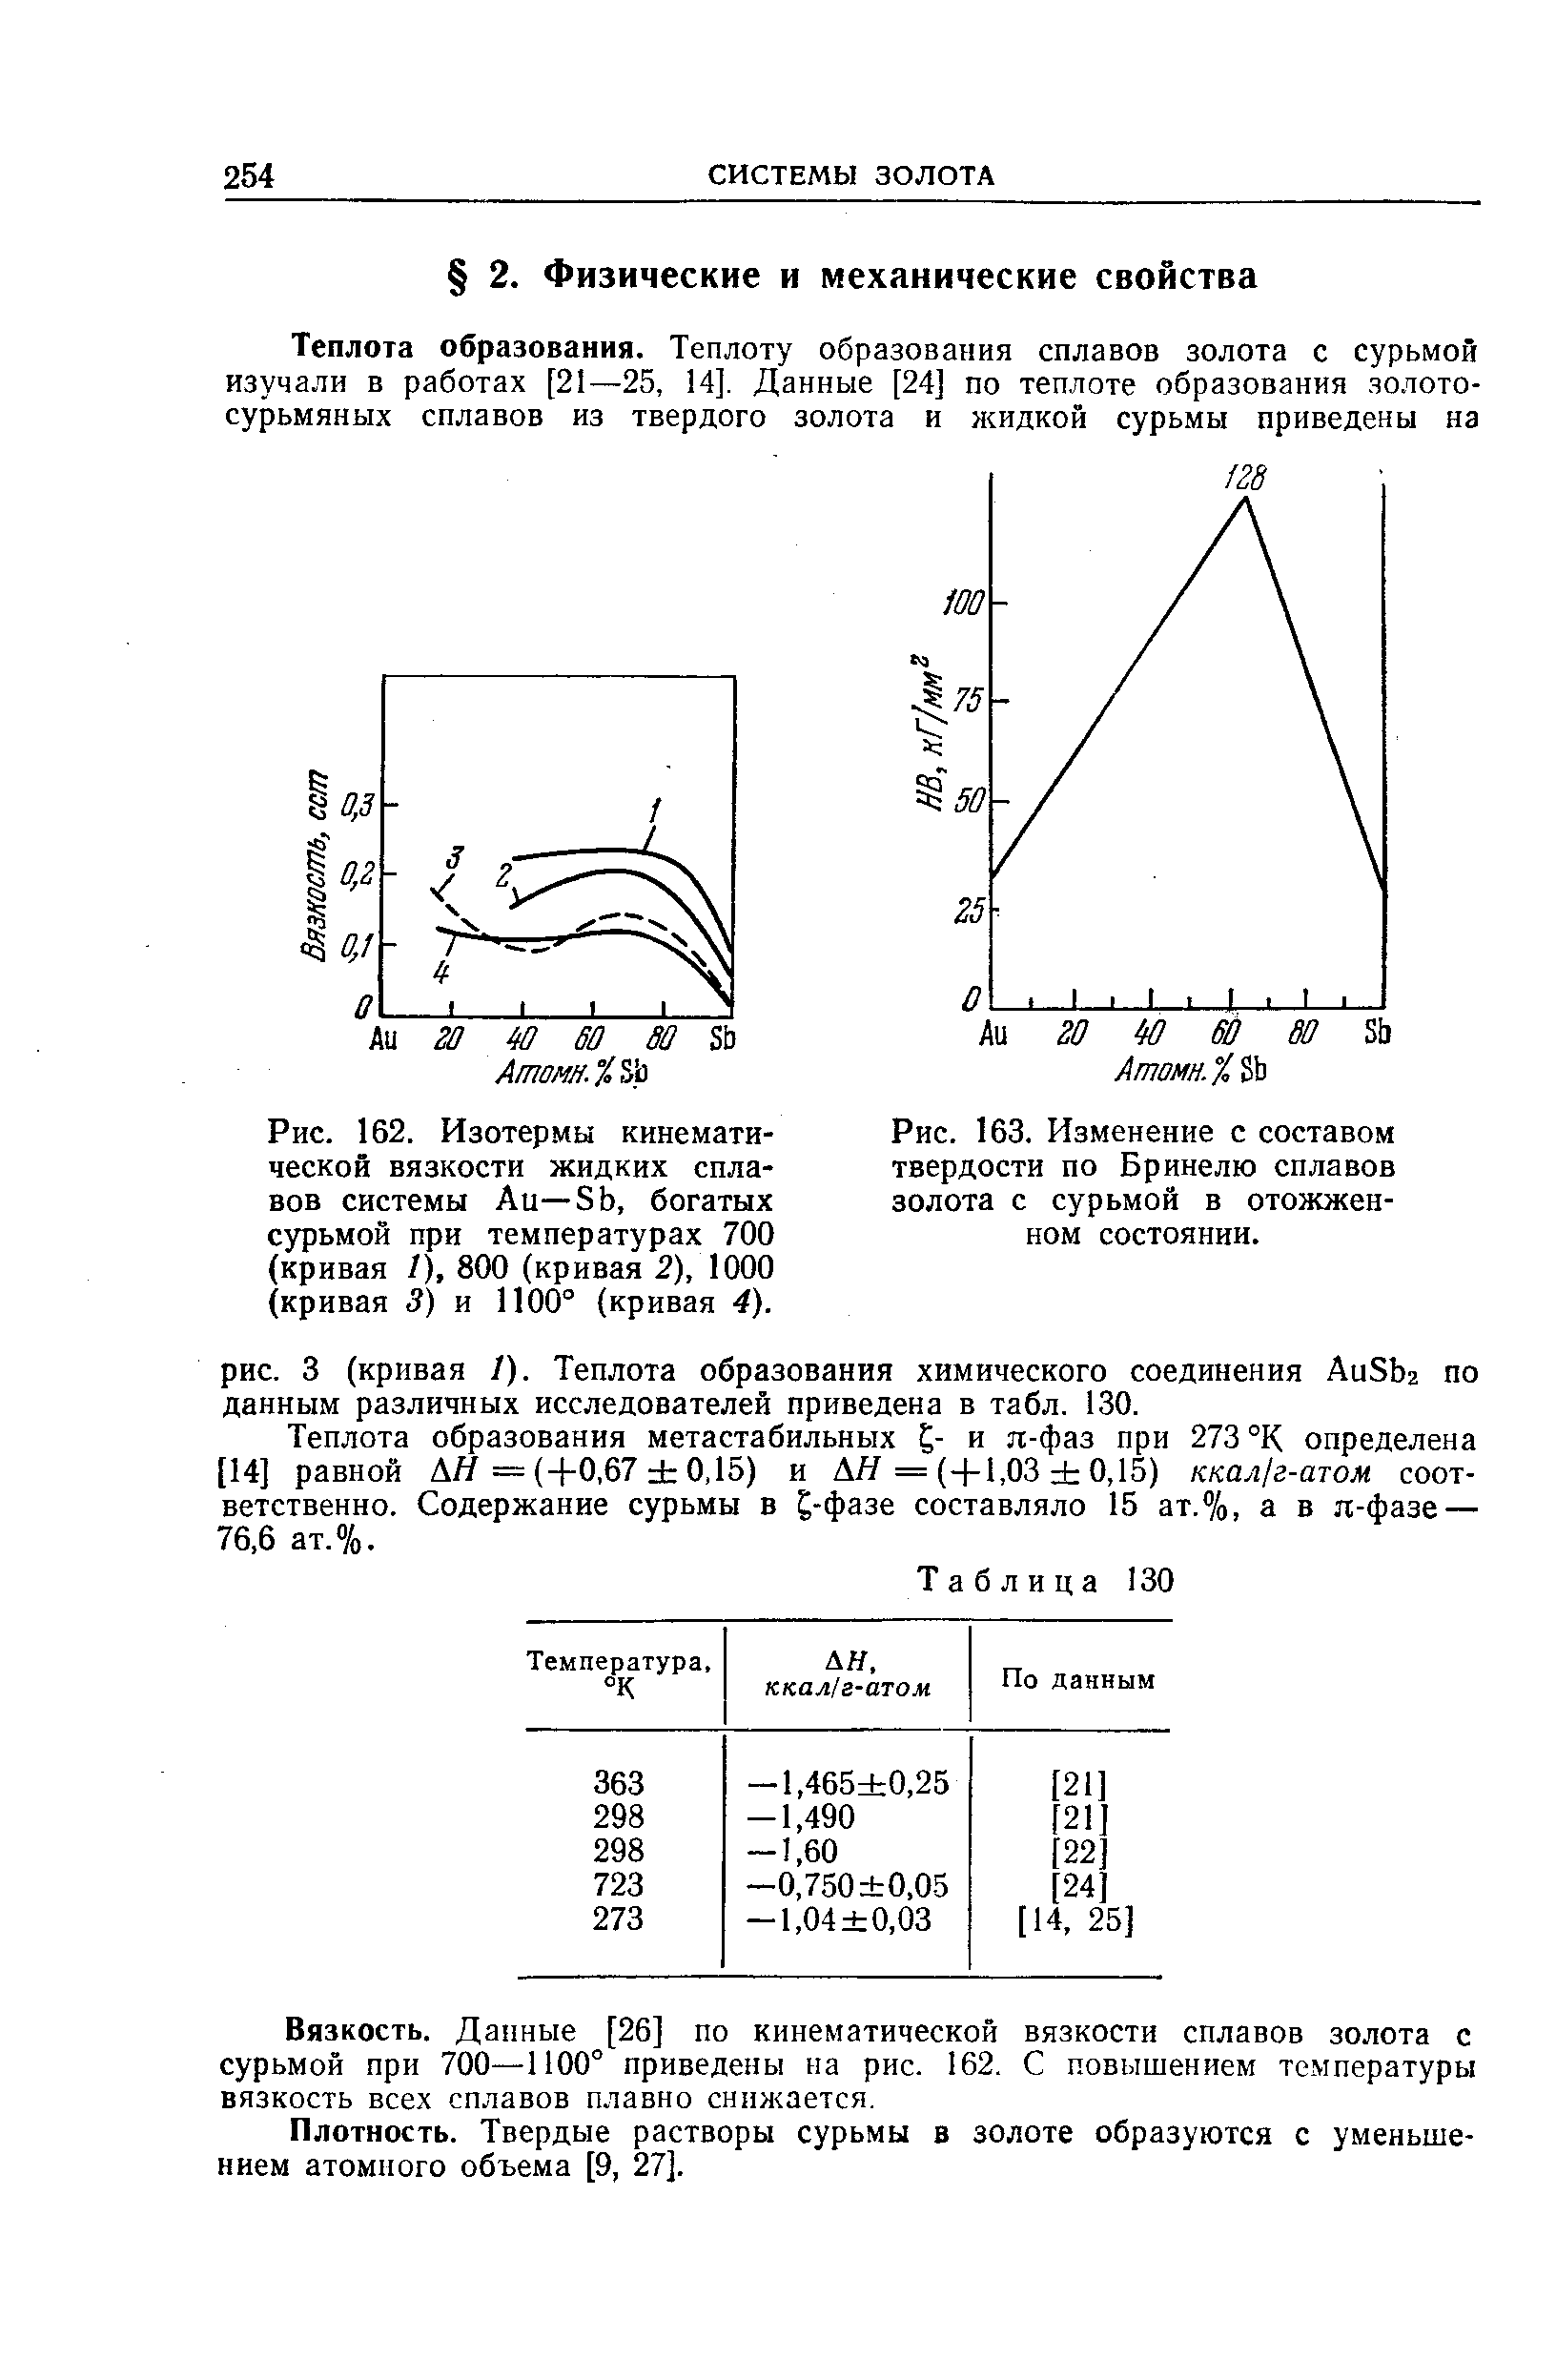 Рис. 162. Изотермы <a href="/info/18527">кинематической вязкости</a> <a href="/info/387447">жидких сплавов</a> системы Аи—Sb, богатых сурьмой при температурах 700 (кривая /), 800 (кривая 2), 1000 (кривая 3) и 1100° (кривая 4).
